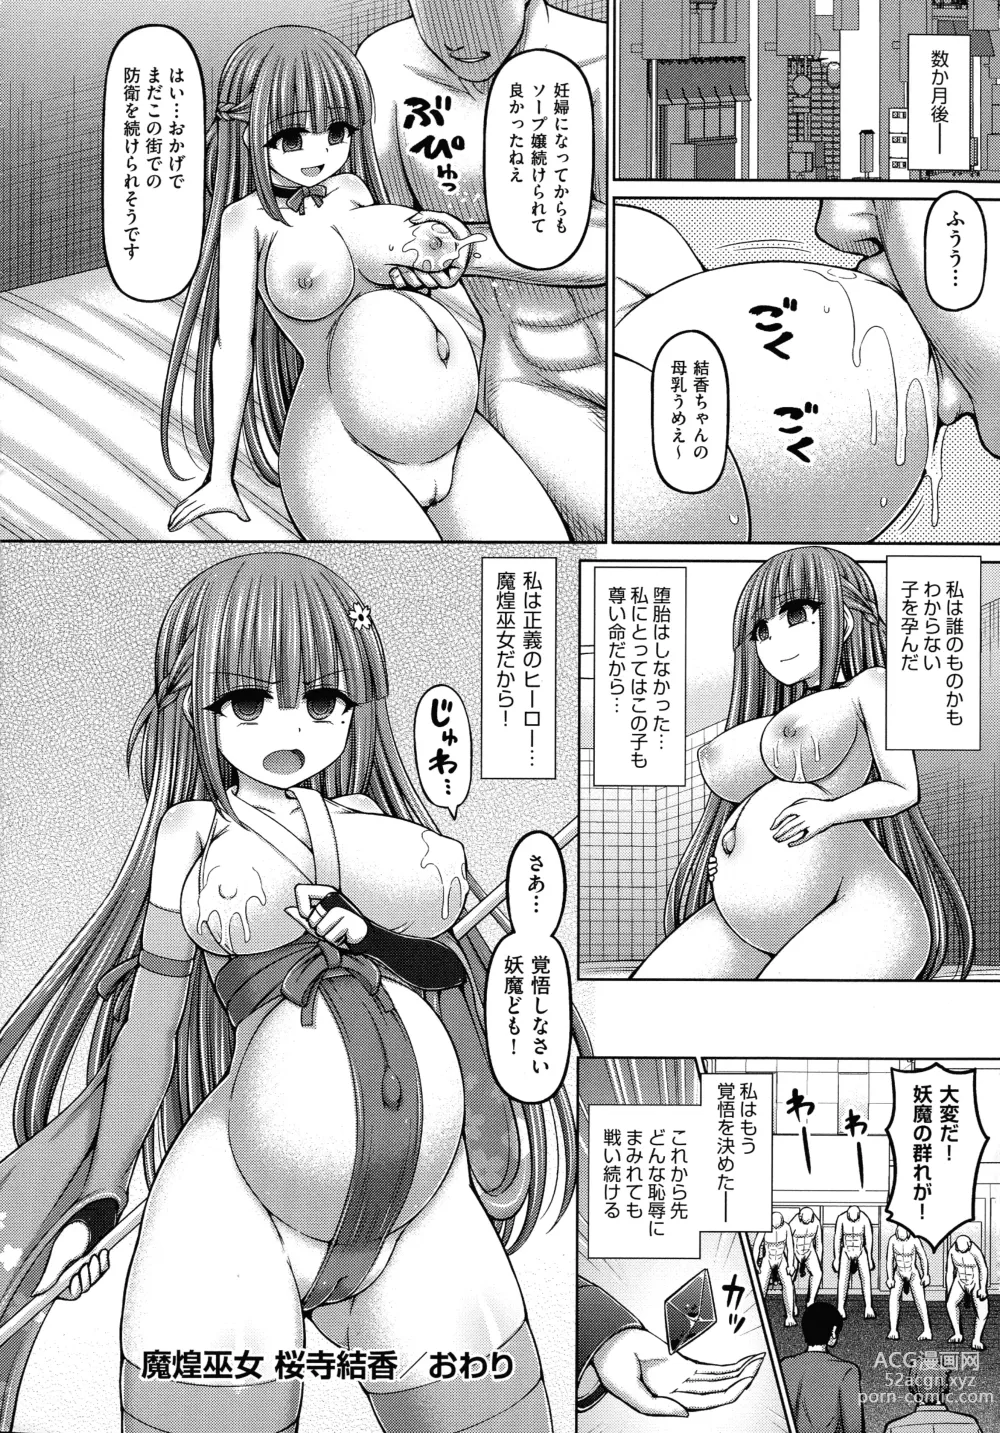 Page 204 of manga Jujutsushi ni Tensei Shita node Koujo Zenin Dorei ni Shite Mita